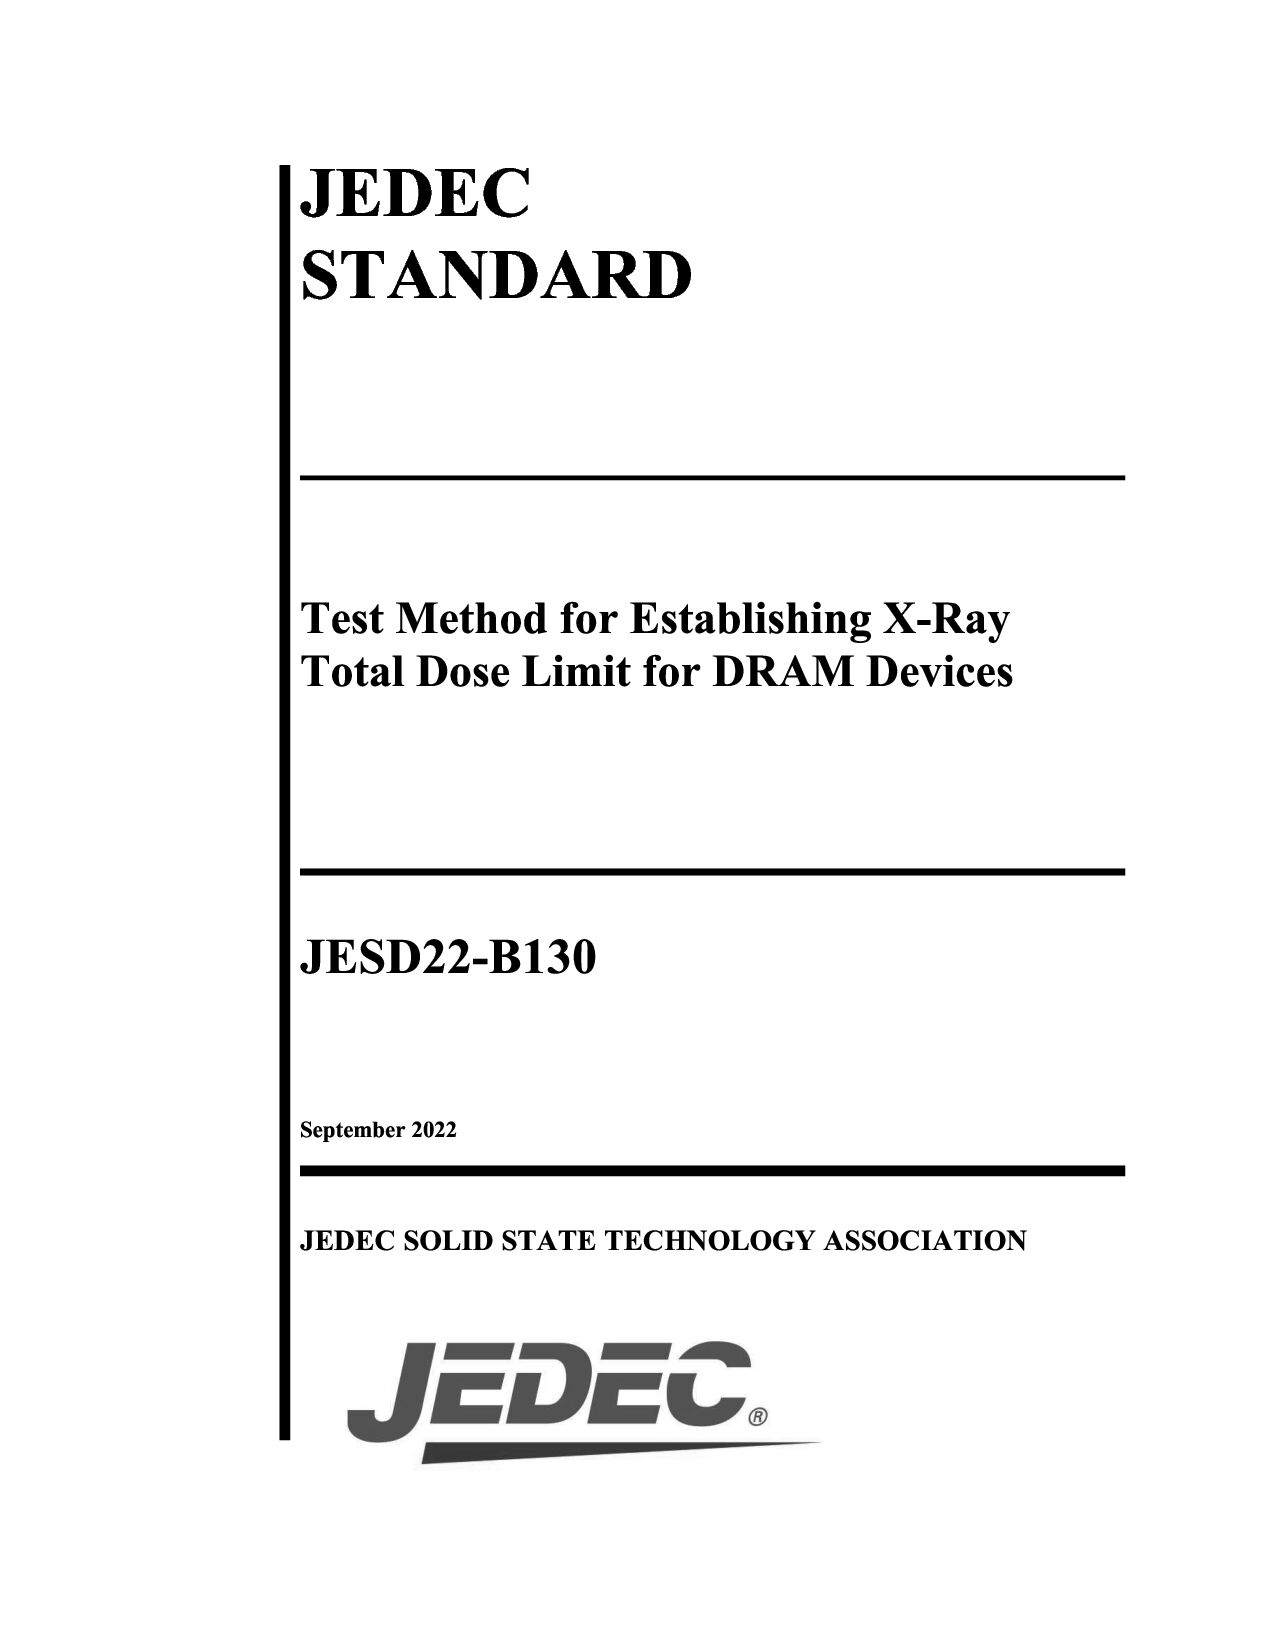 JEDEC JESD22-B130-2022